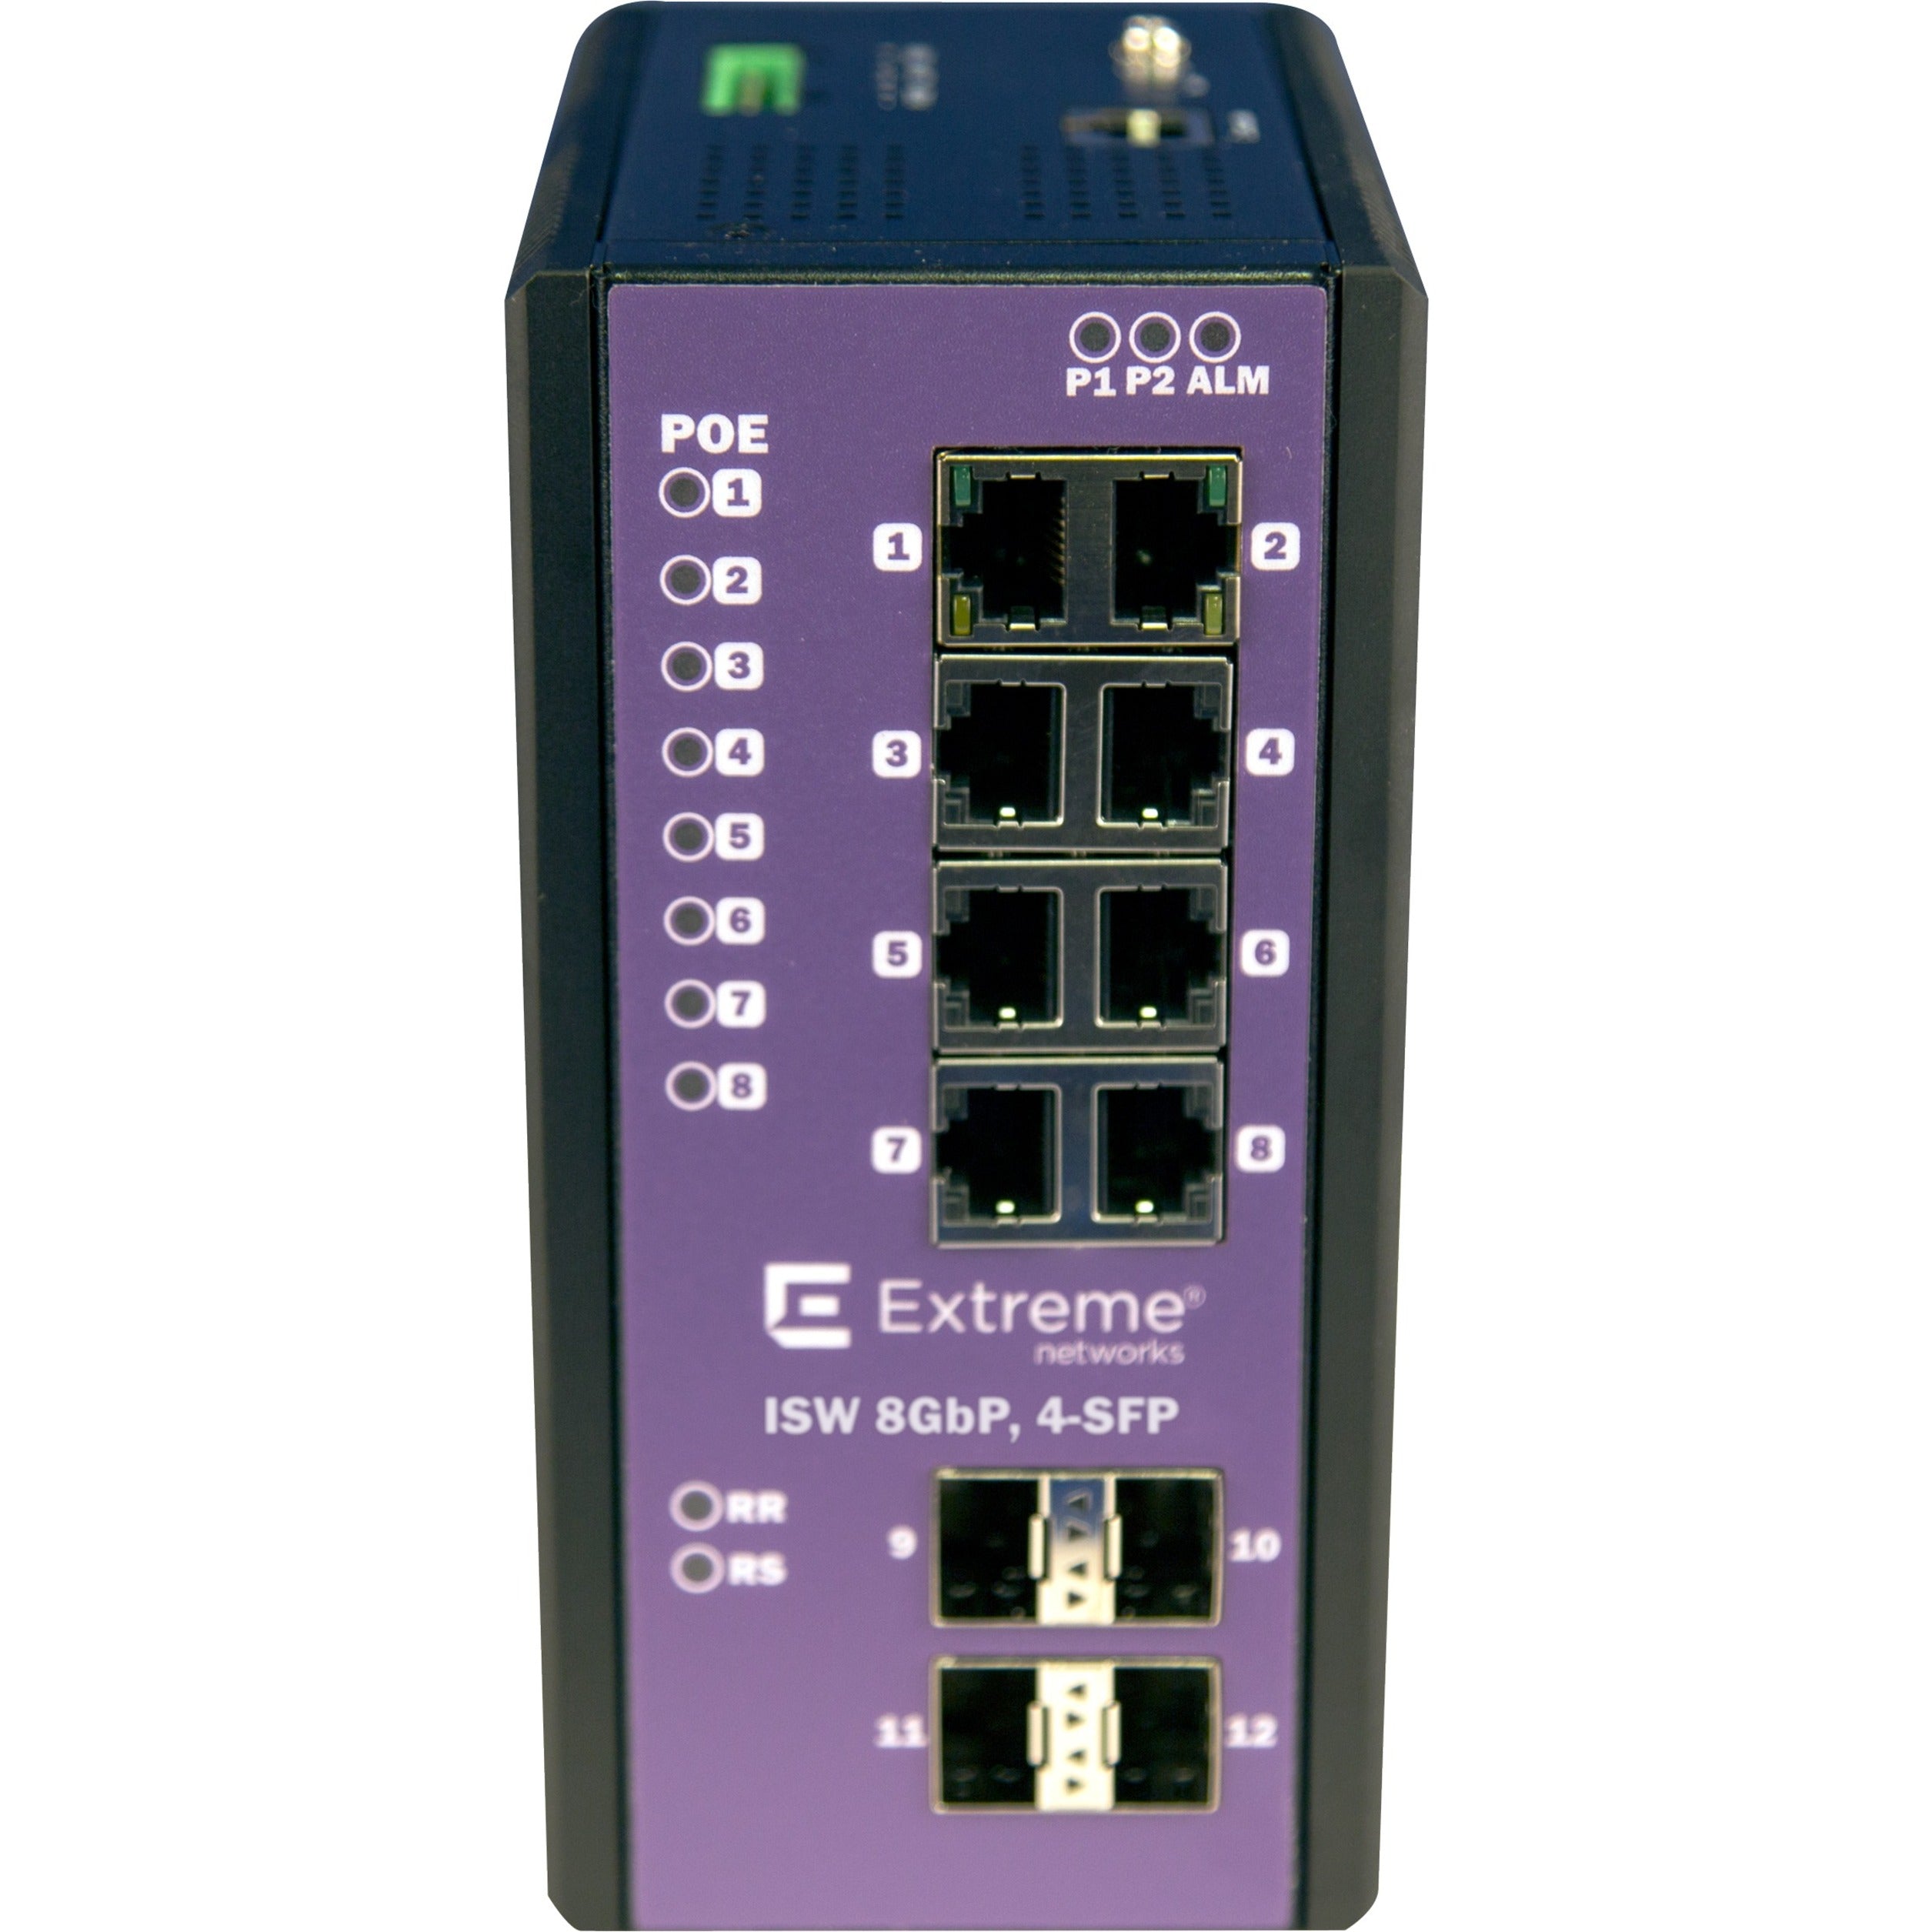 Black Box LIG1014A 14-Port Managed Gigabit Ethernet Switch with 4 SFP Slots